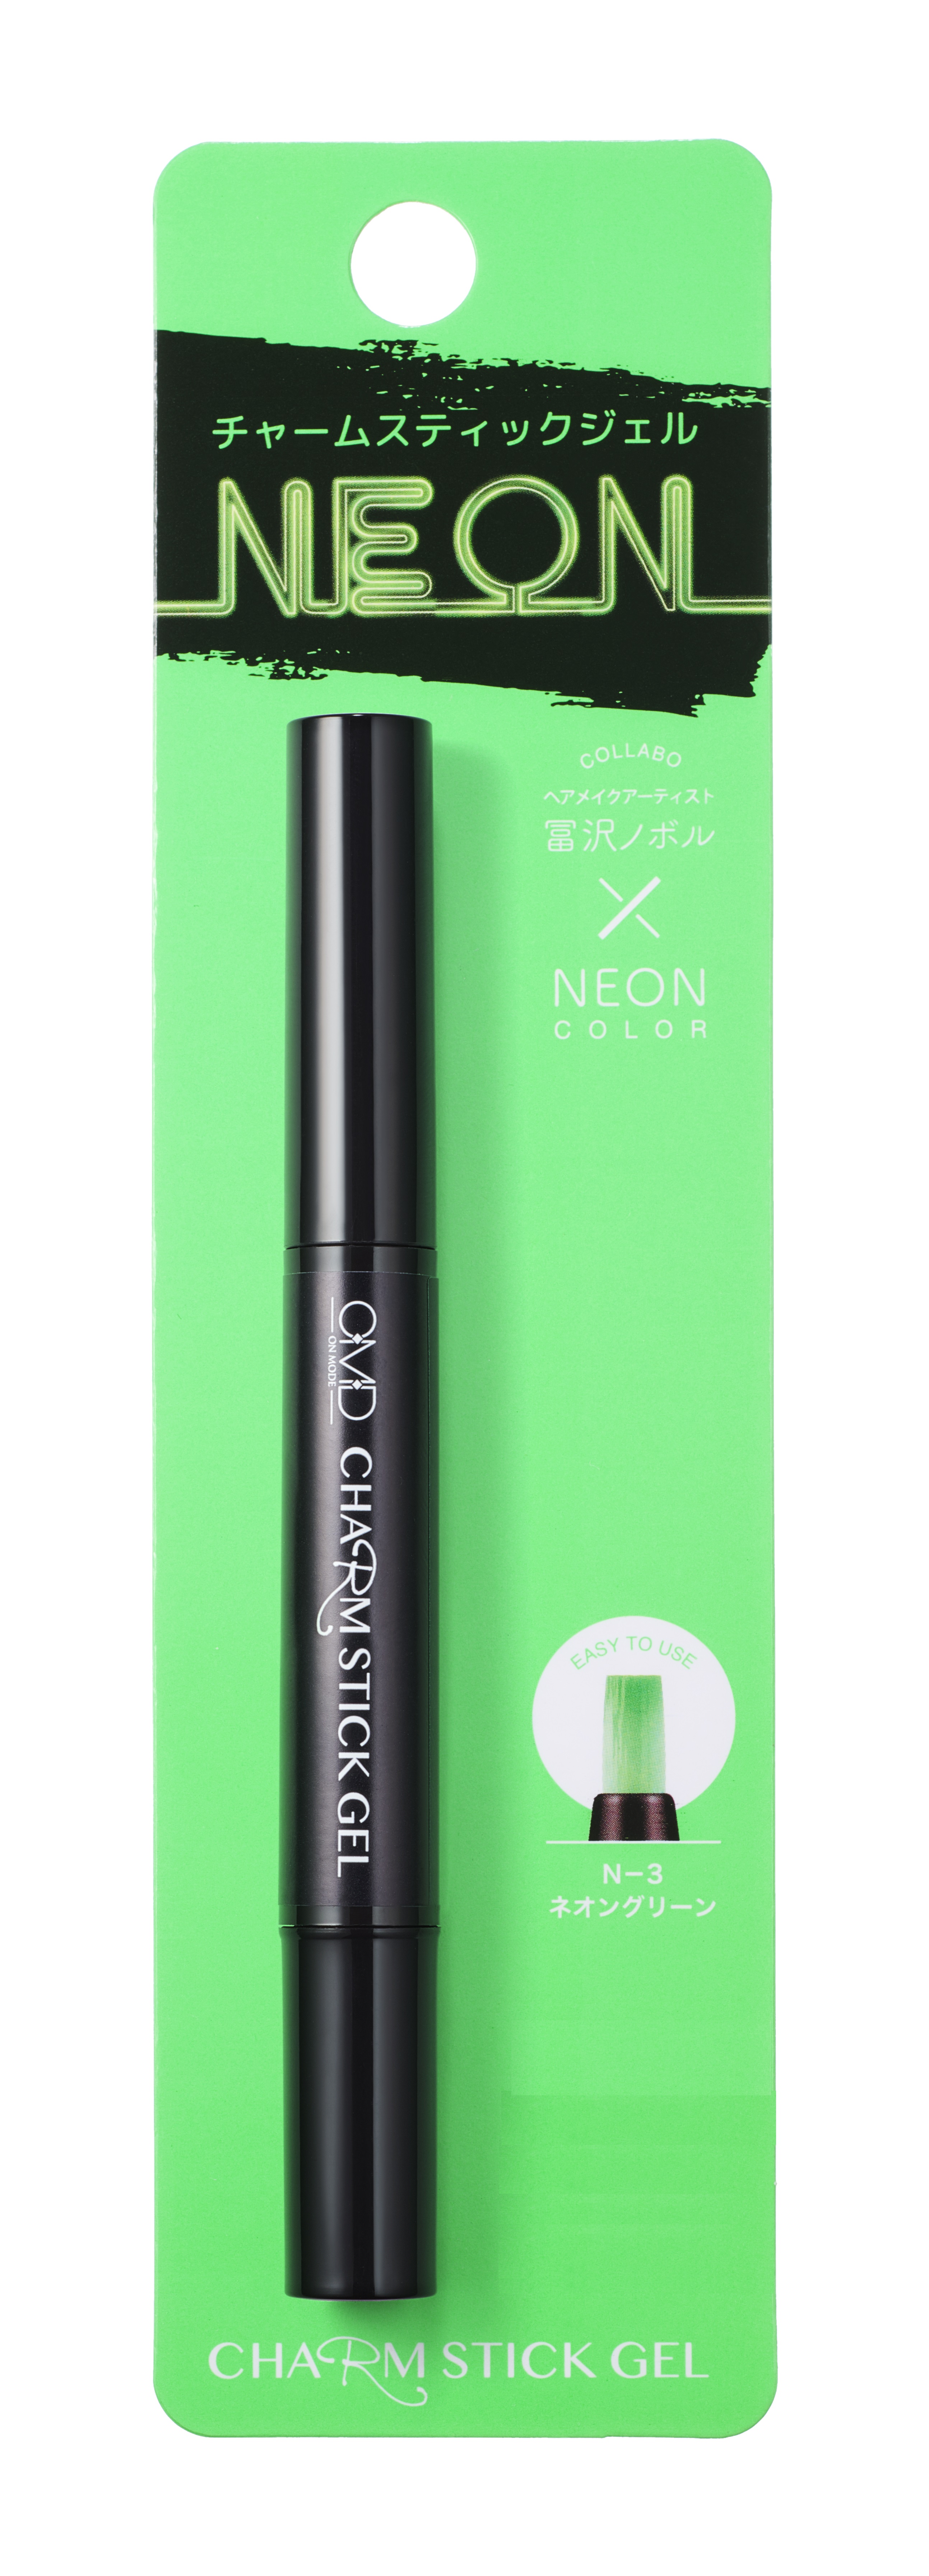 Гель-лак для ногтей OMD Charm Stick Gel N-3 Green Neon ключница закрытая правила нашего дома 26 5х31 5 см зеленый